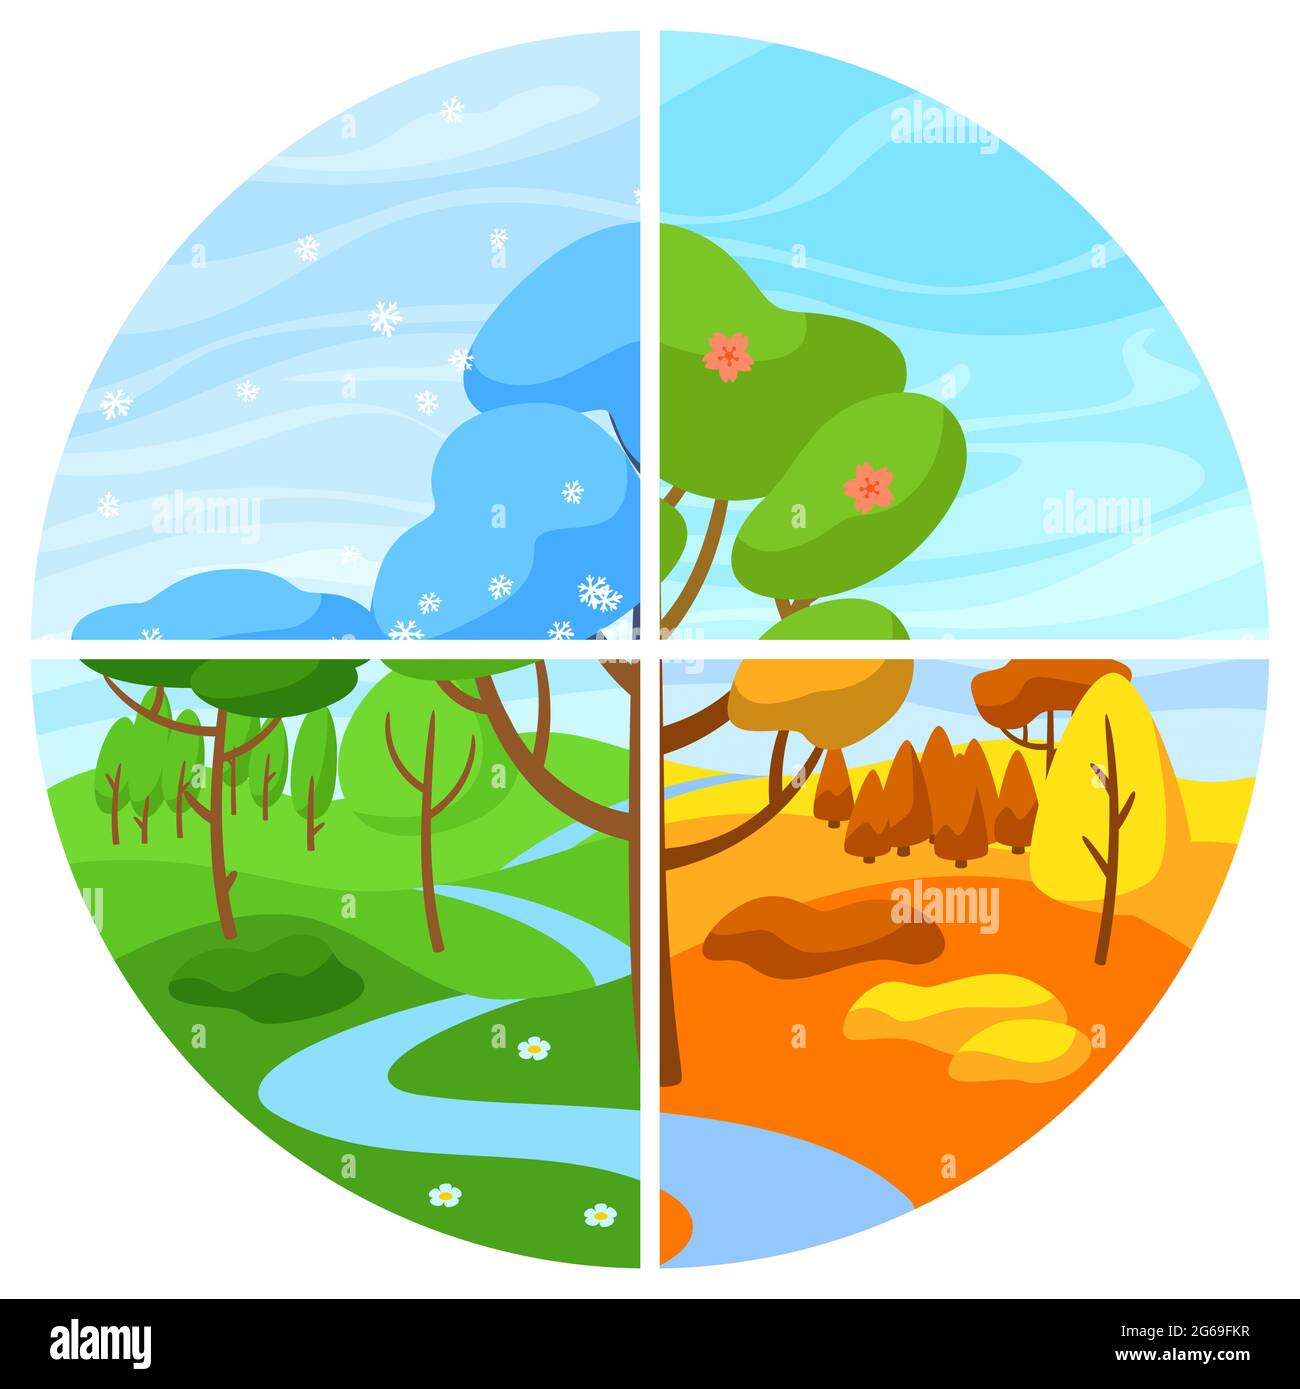 Vier Jahreszeiten Landschaft. Illustration mit Wald, Bäumen und Sträuchern im Winter, Frühling, Sommer, Herbst. Stock Vektor